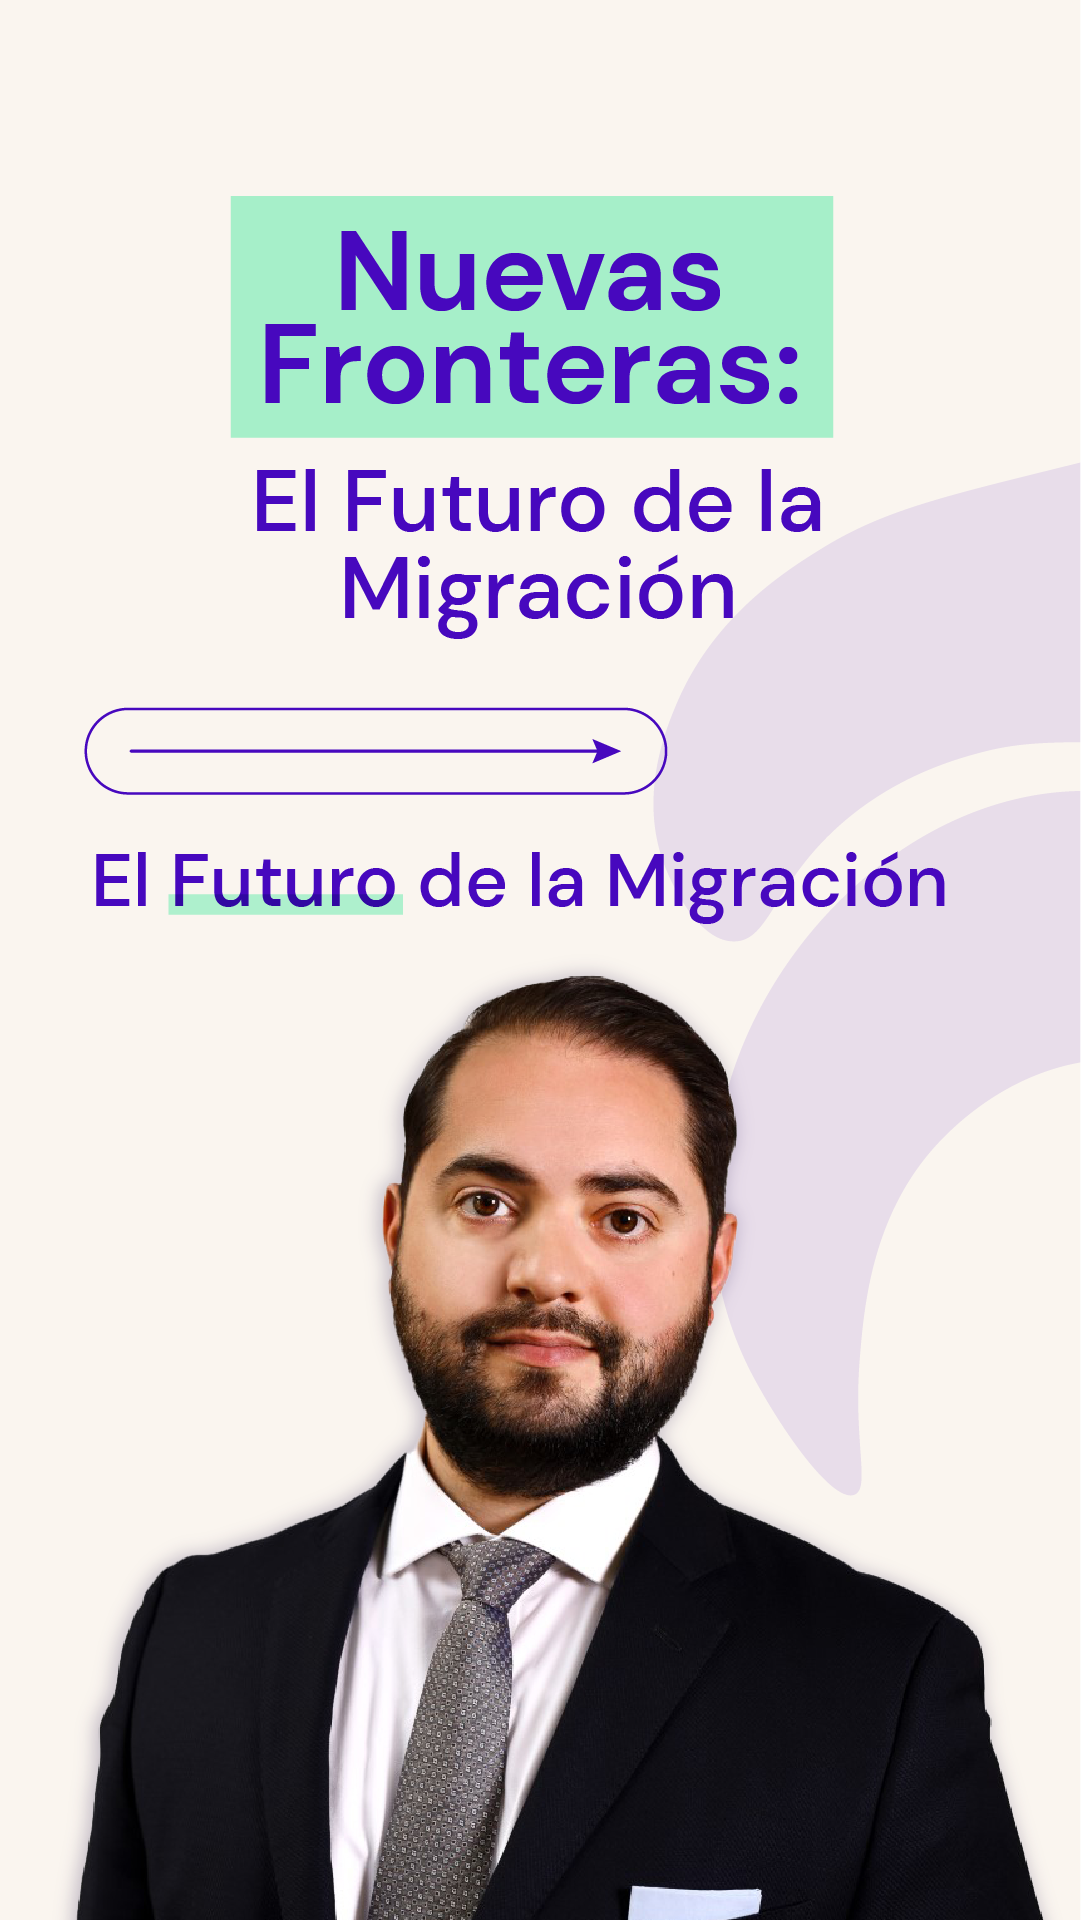 El Futuro de la Migración